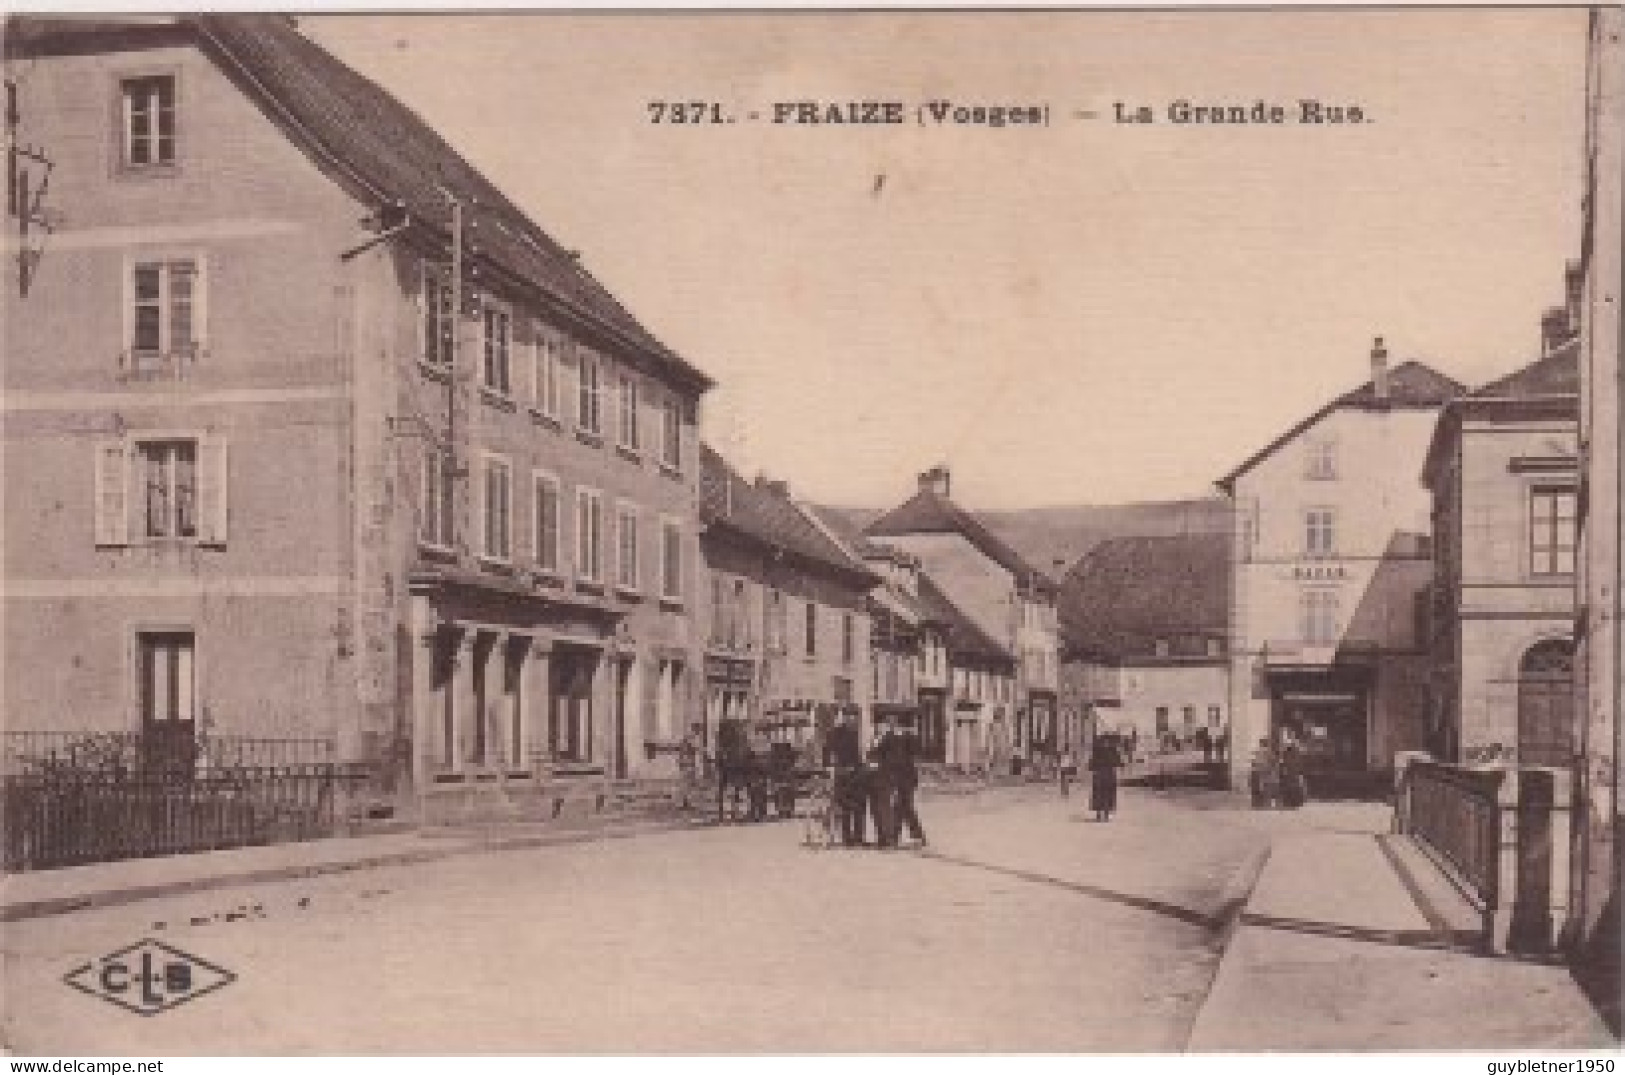 Fraise Grand Rue - Fraize